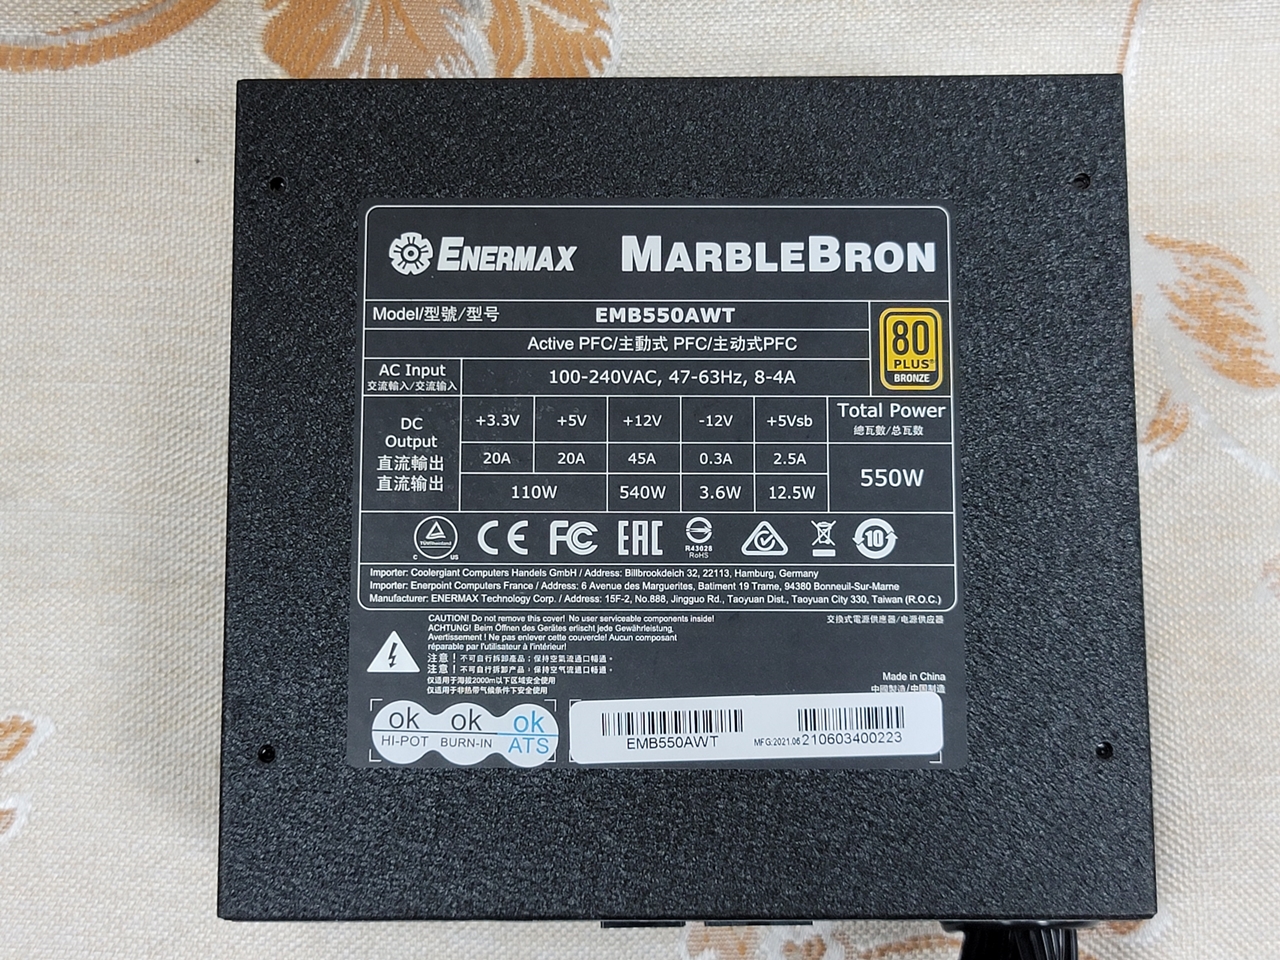 安耐美 MarbleBron 銅競魔 550W 銅牌認證電源供應器簡易開箱3645